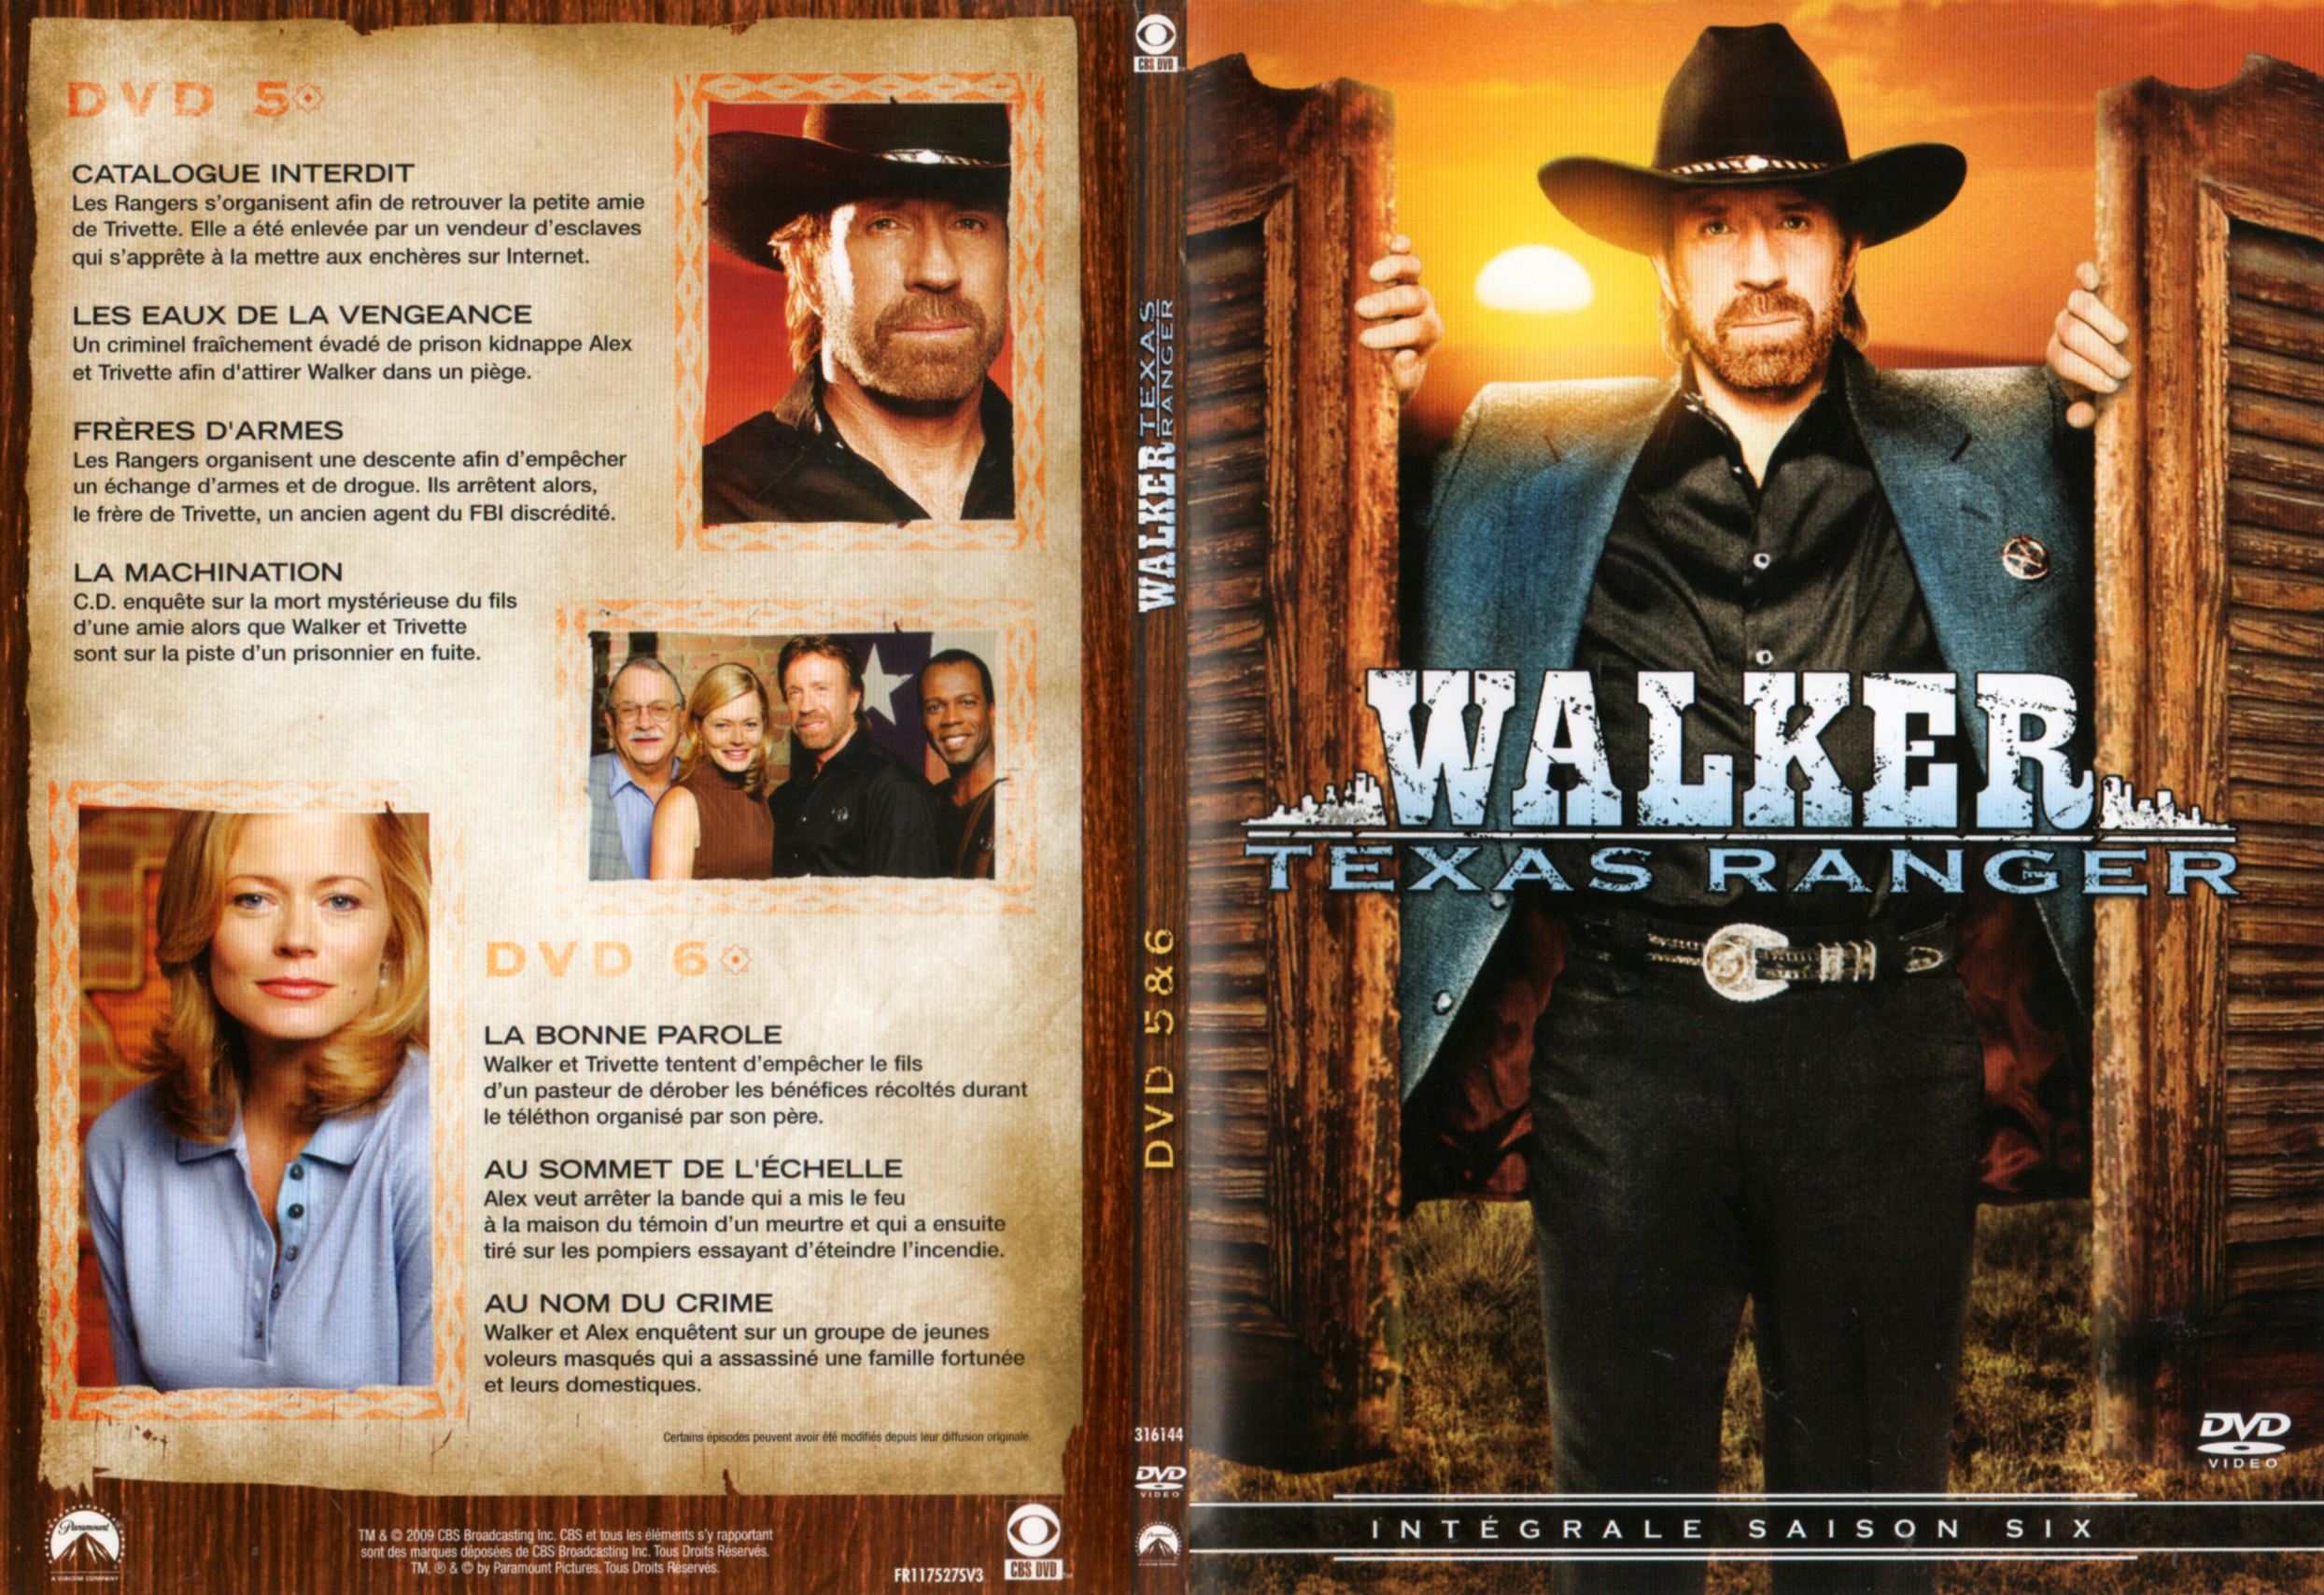 Jaquette DVD Walker Texas Ranger Saison 6 DVD 3